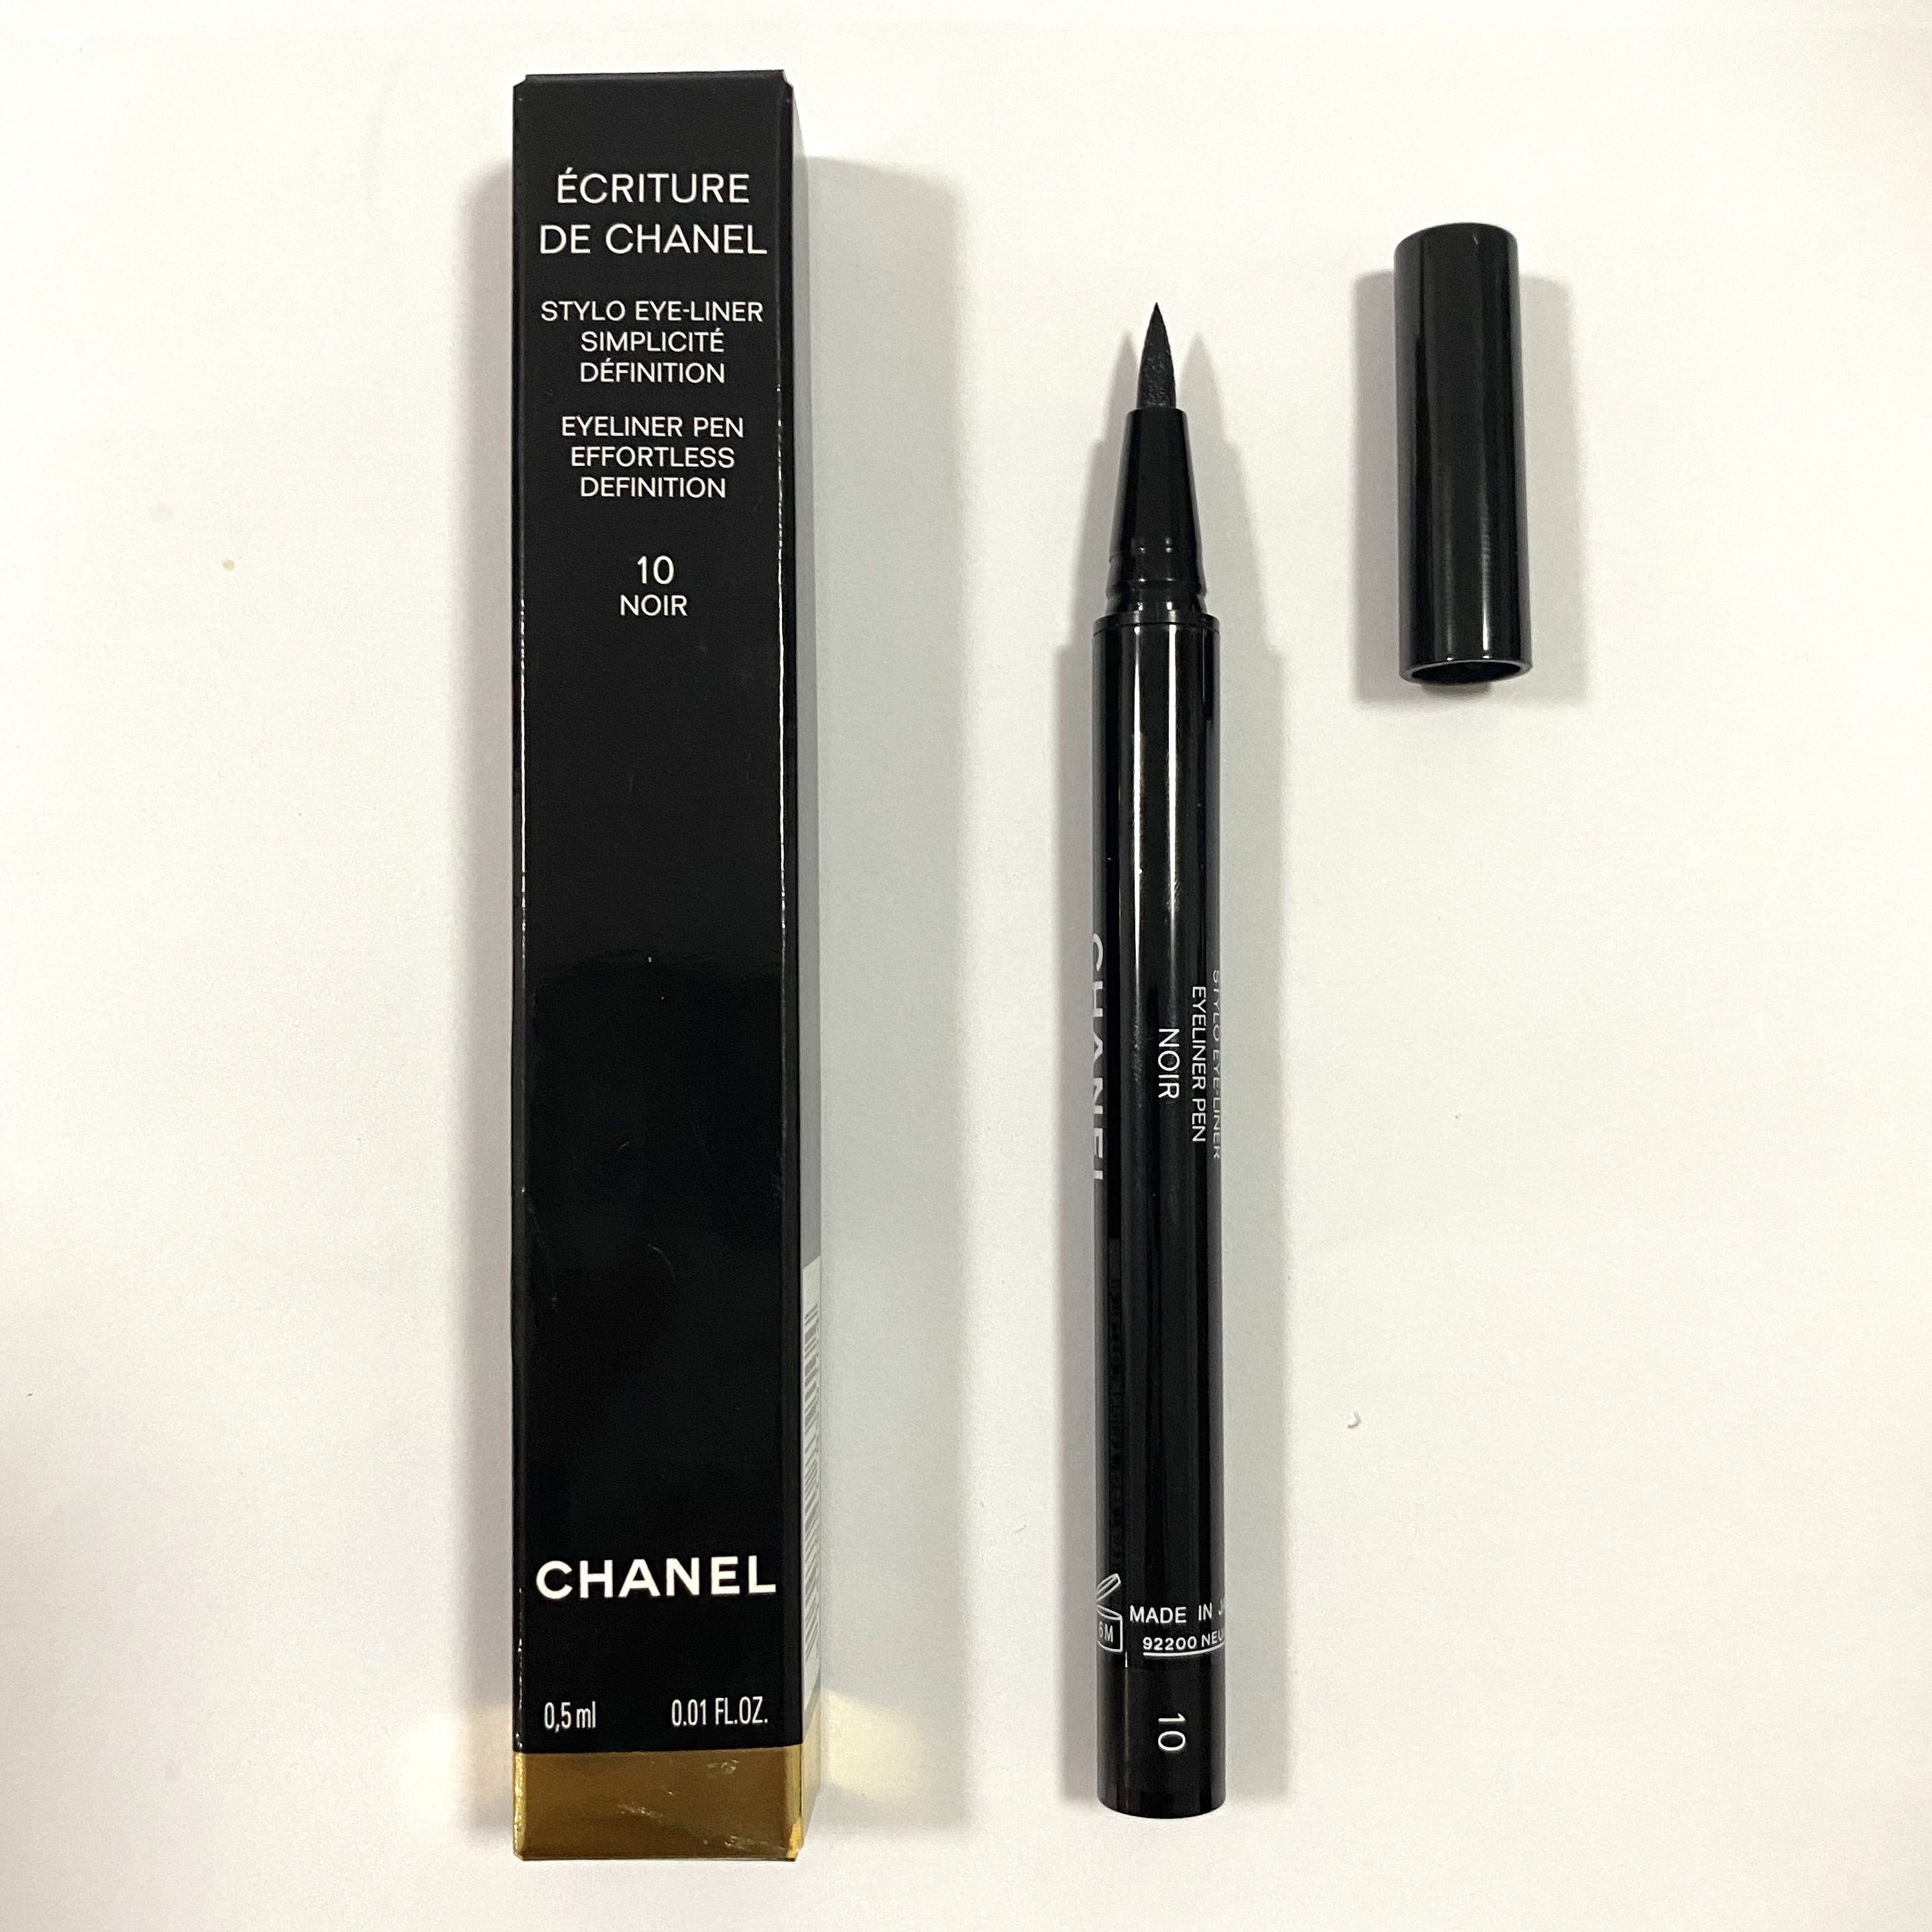 Chanel Ecriture De Chanel Eyeliner Pen in Noir Is All-Caps